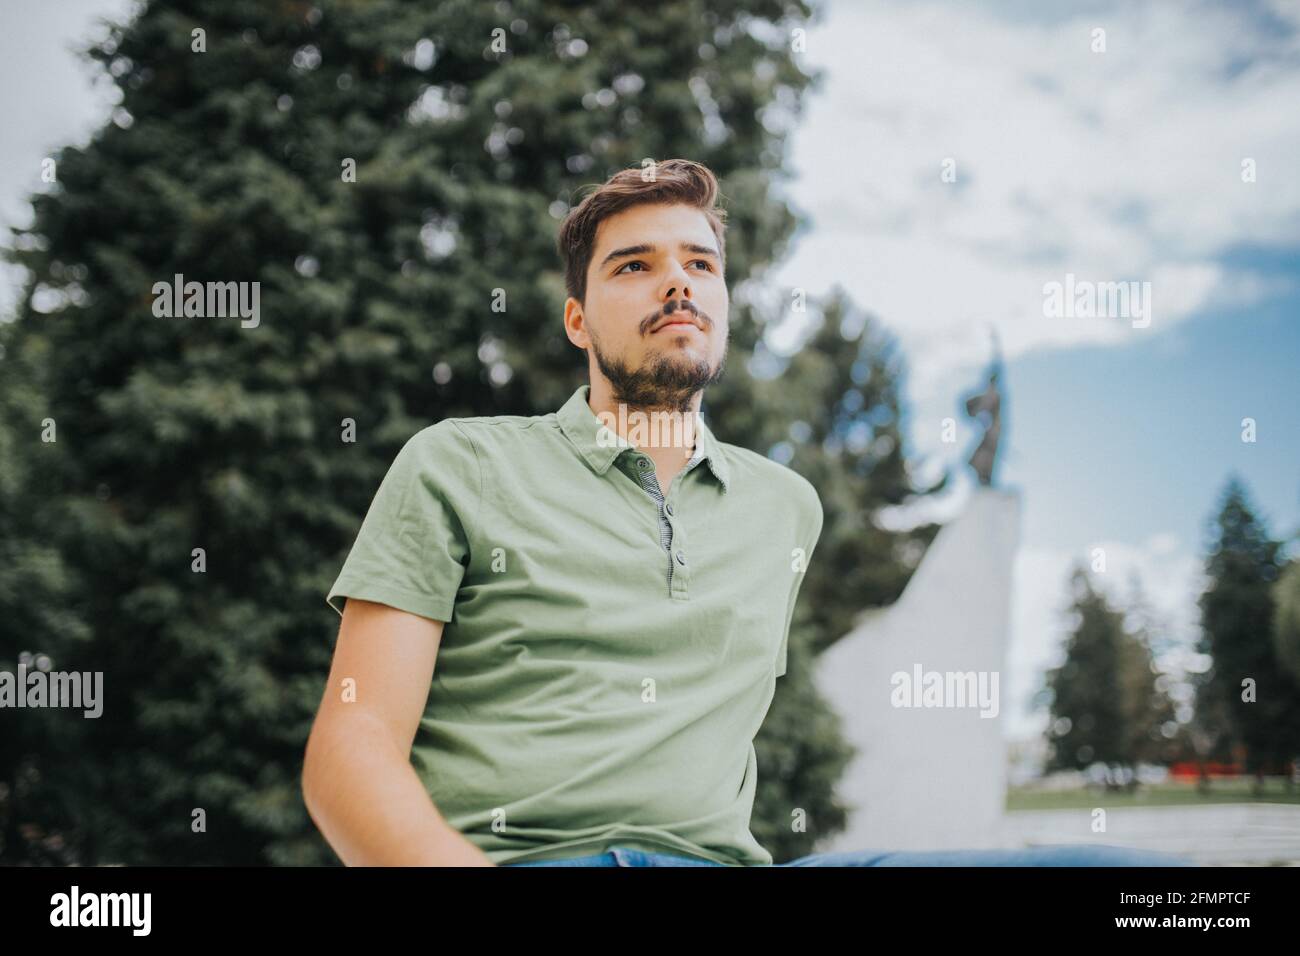 Prise de vue à angle bas d'un jeune homme caucasien attrayant avec une expression sérieuse posant à l'extérieur Banque D'Images